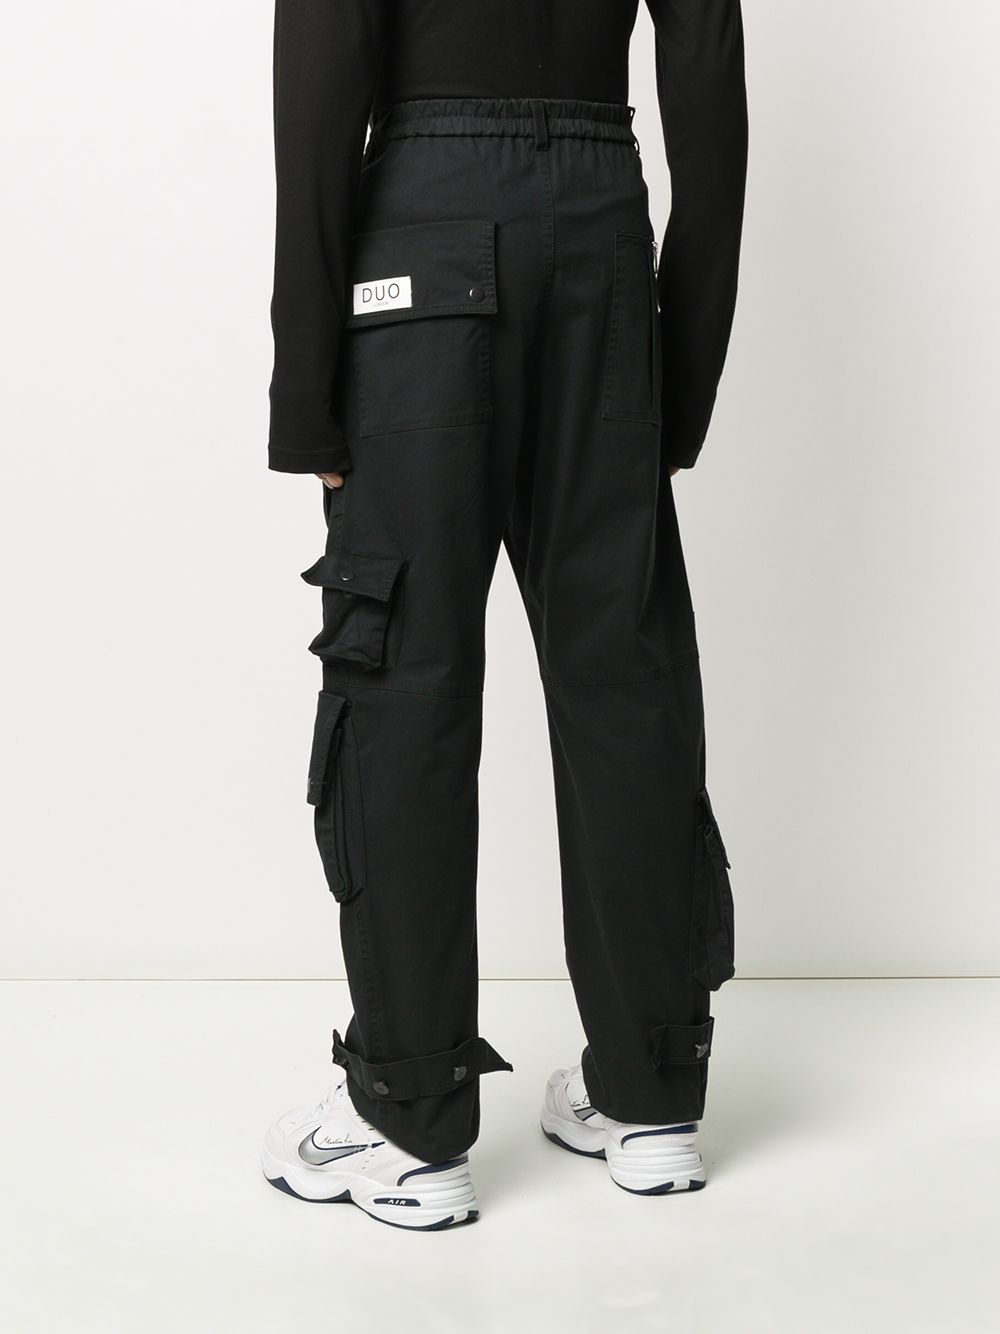 фото Duoltd прямые брюки карго